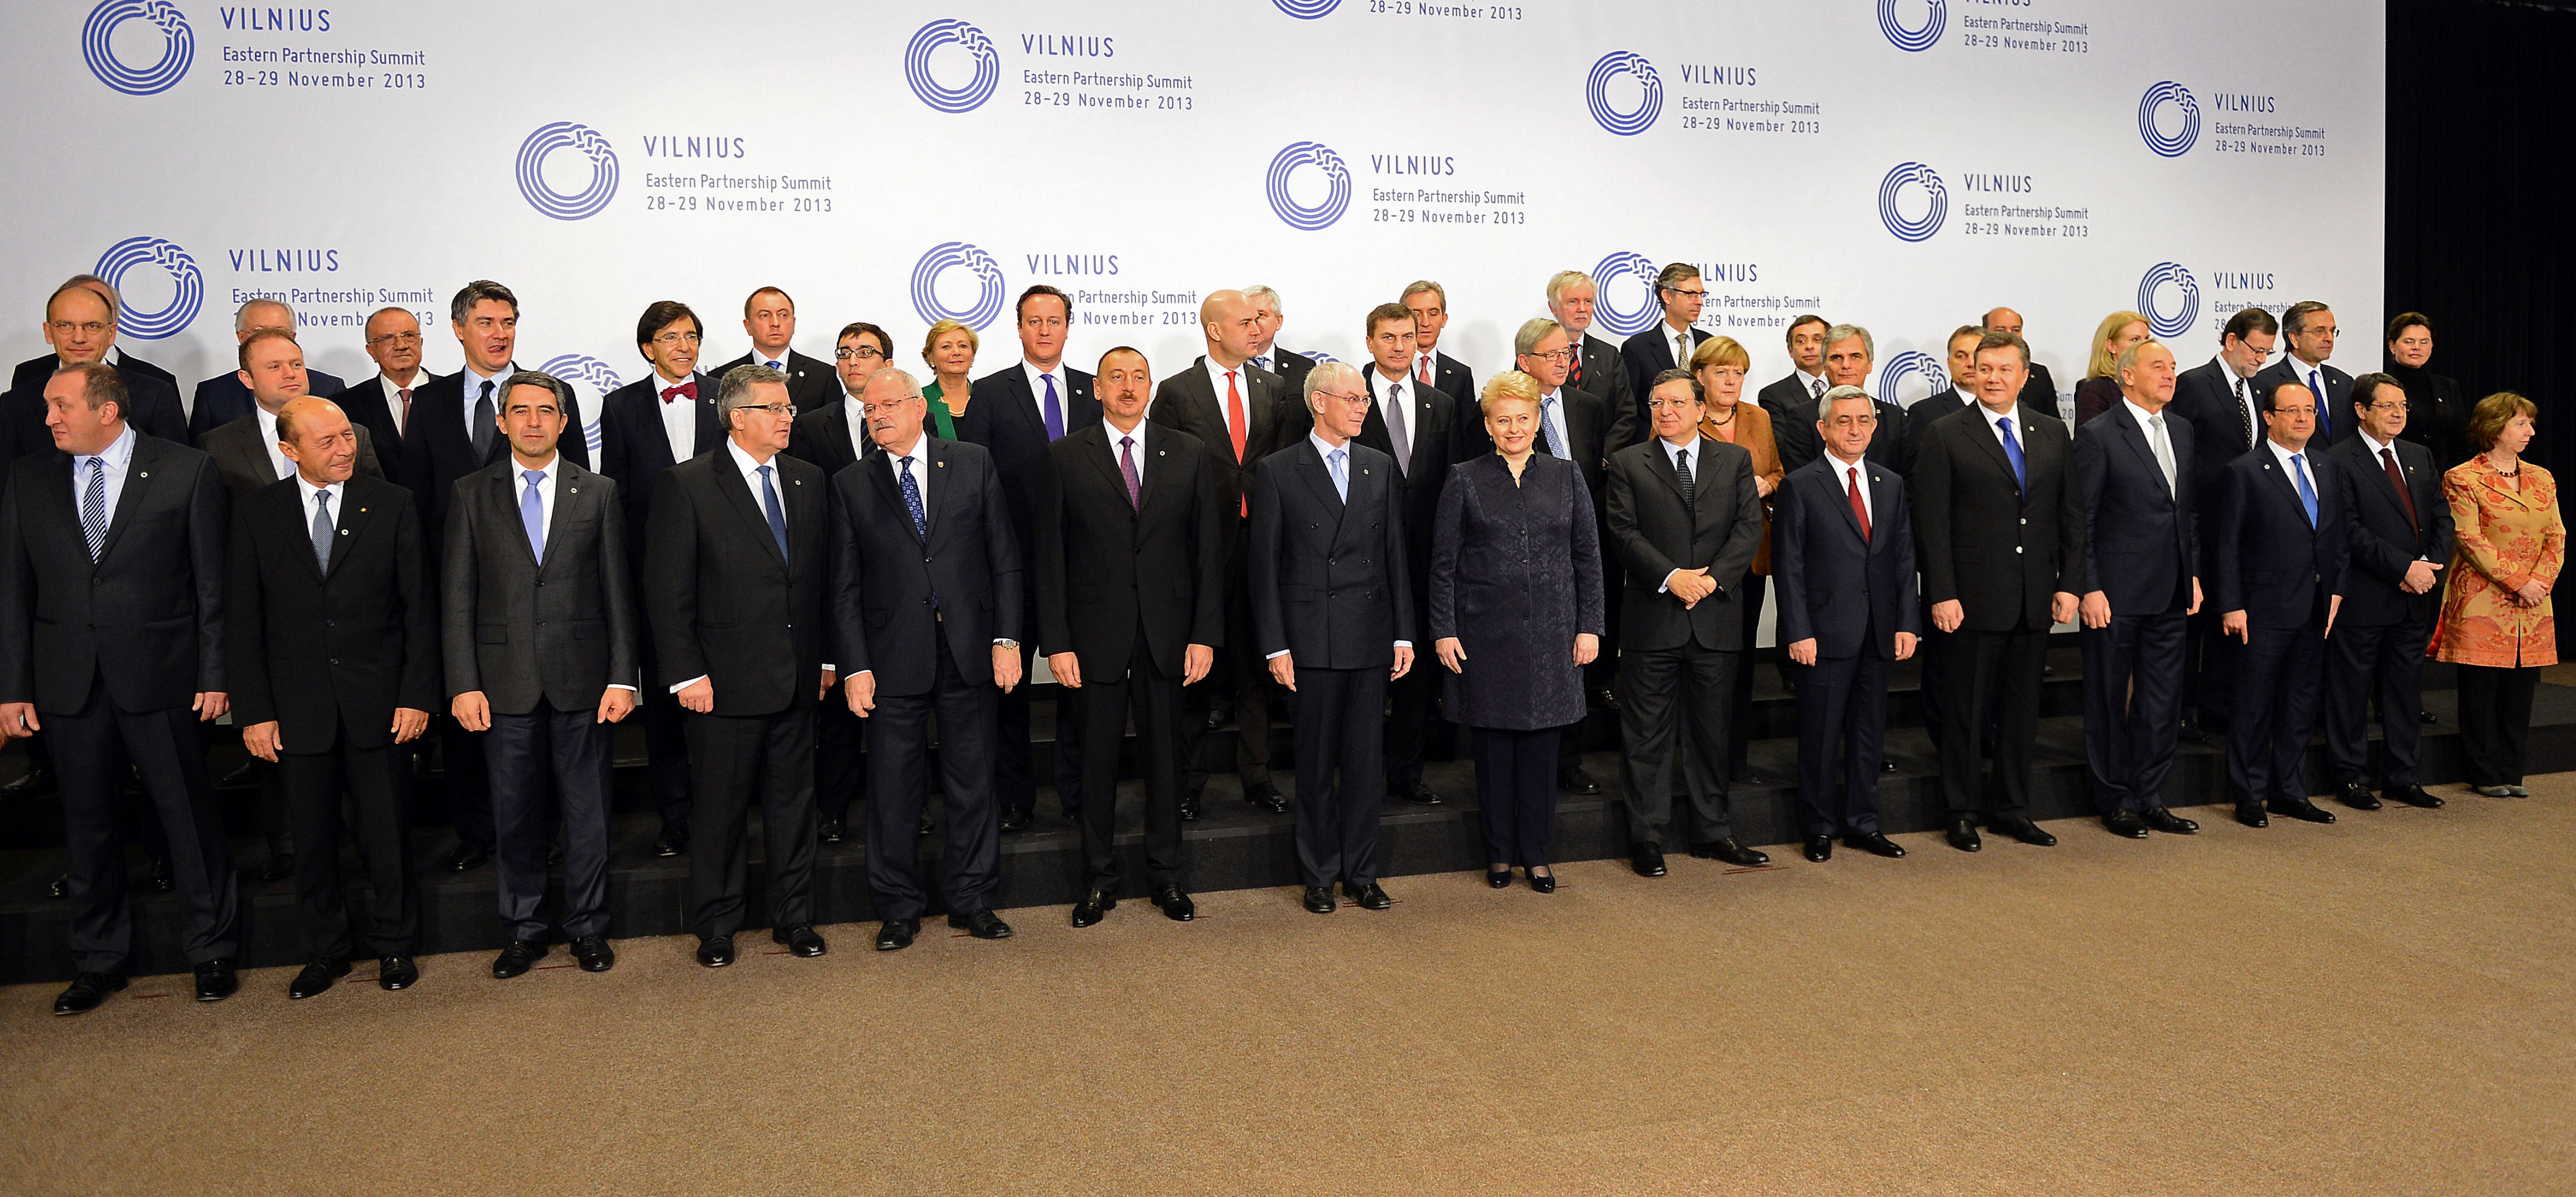 Участники саммита Европейского Союза "Восточное партнерство" в Вильнюсе,  29 ноября 2013 года